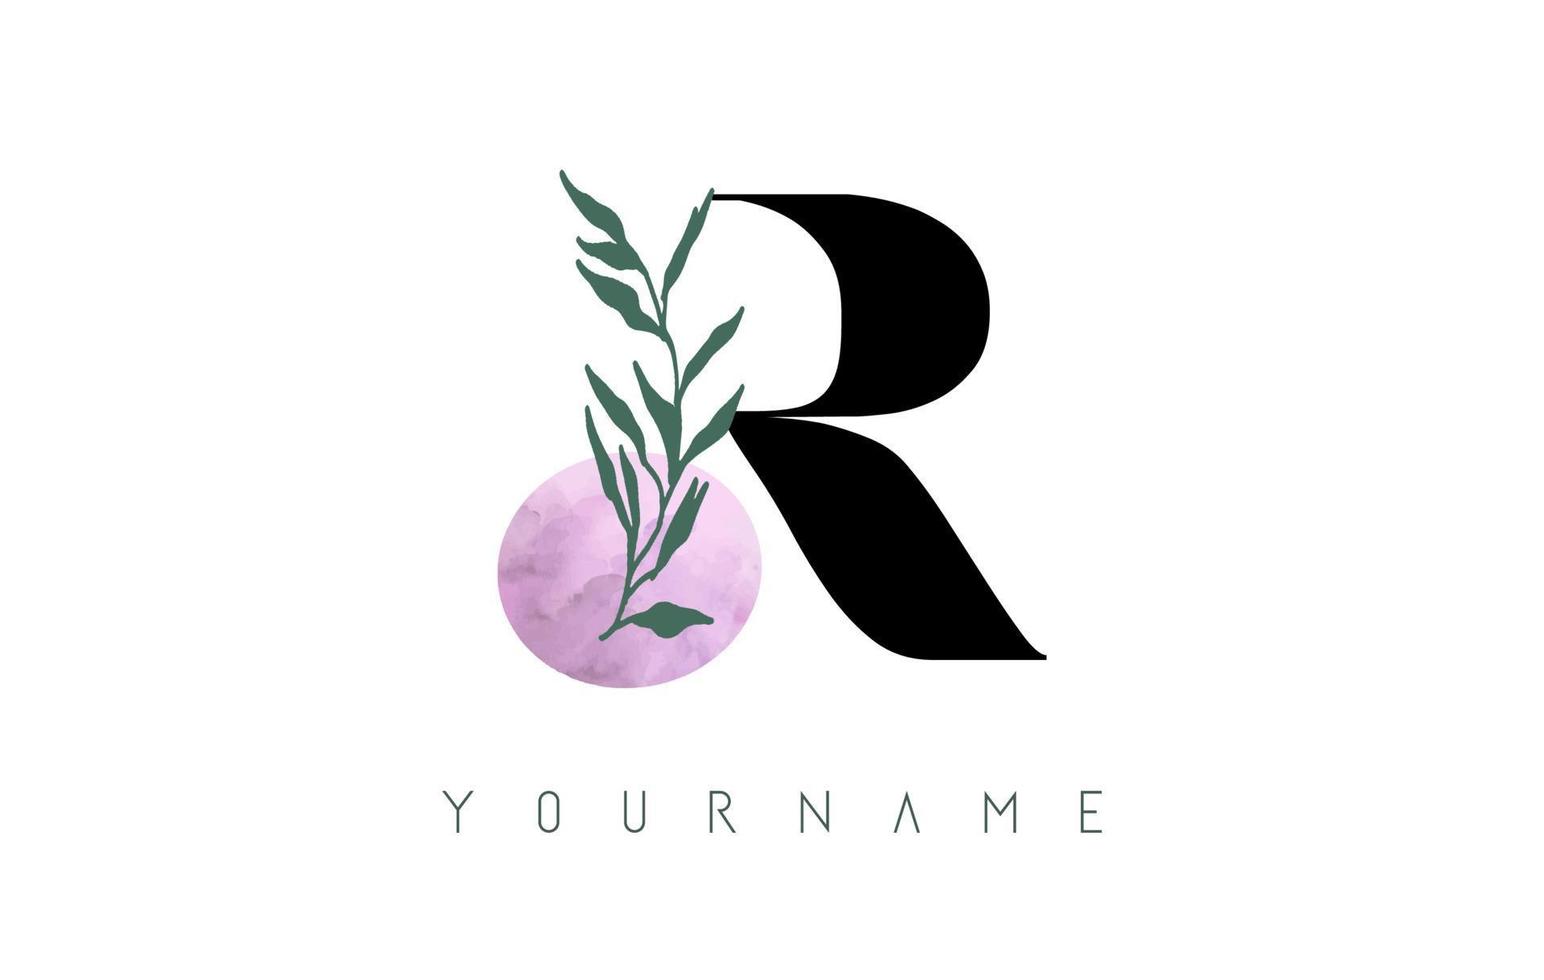 r lettera logo design con cerchio rosa e foglie verdi. illustrazione vettoriale con elementi botanici. concetto di design del modello di vettore della natura con la lettera r.